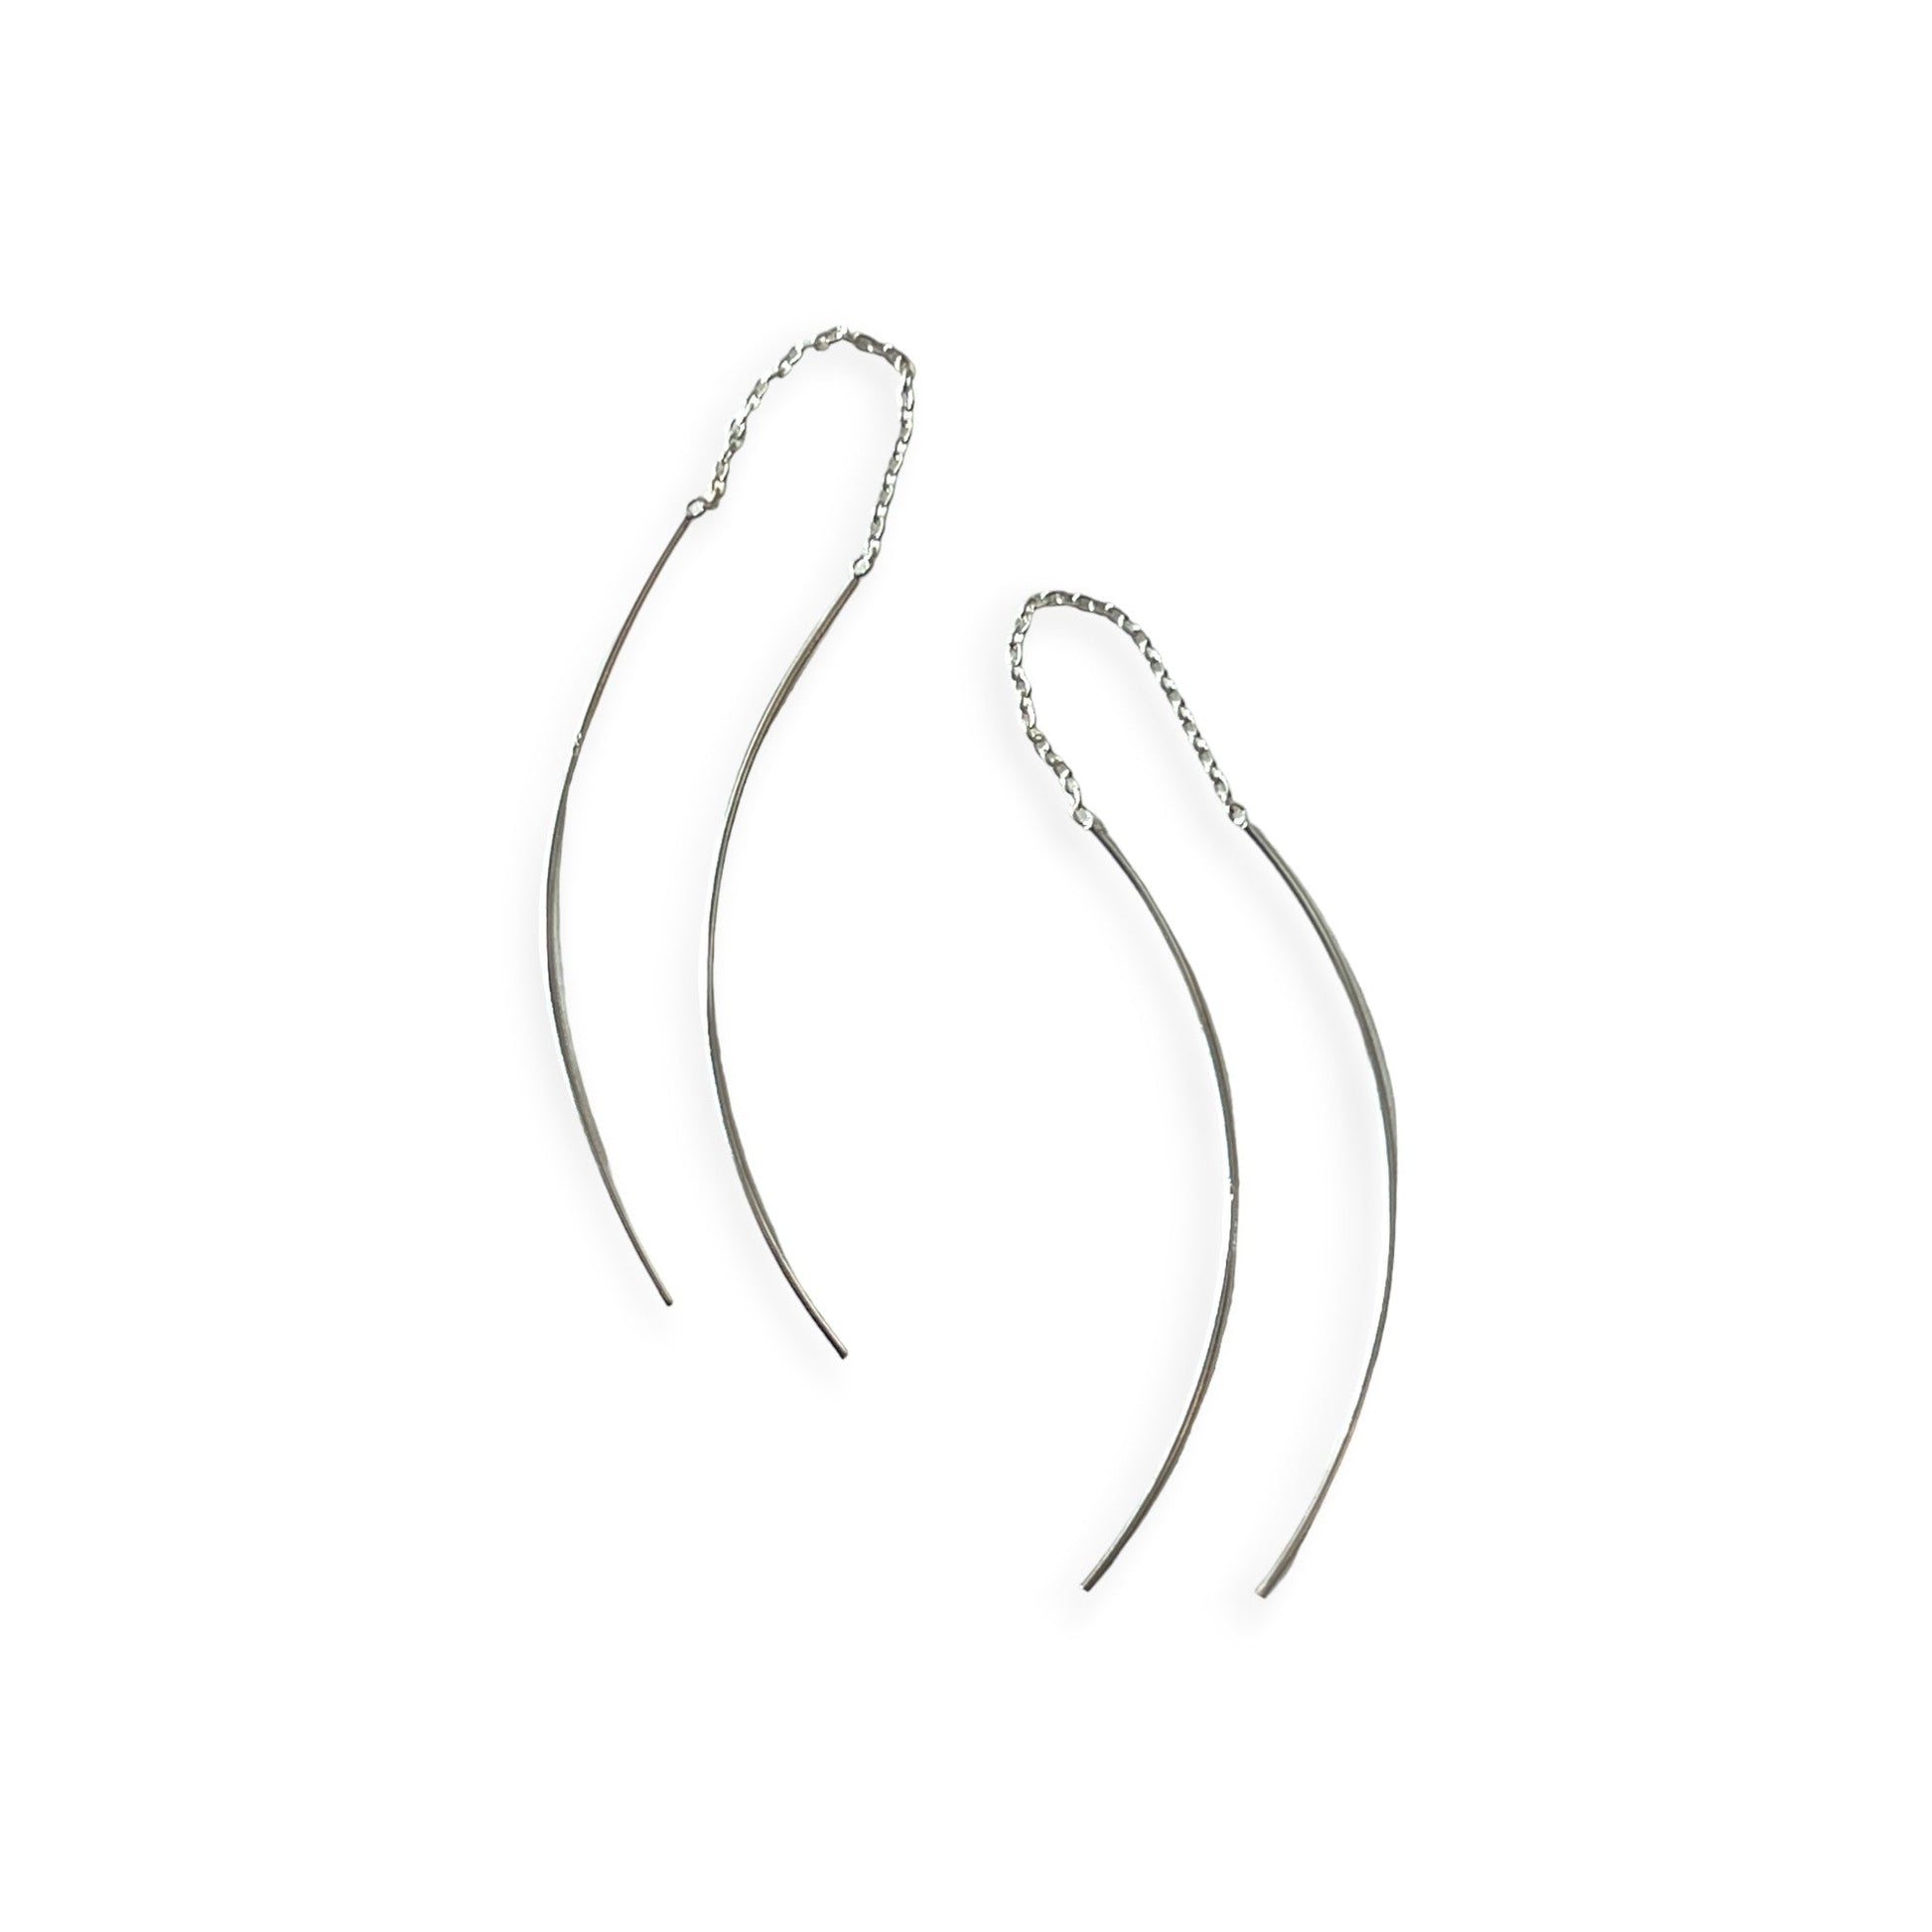 Delicate silver strand drop earrings - Sundara Joon